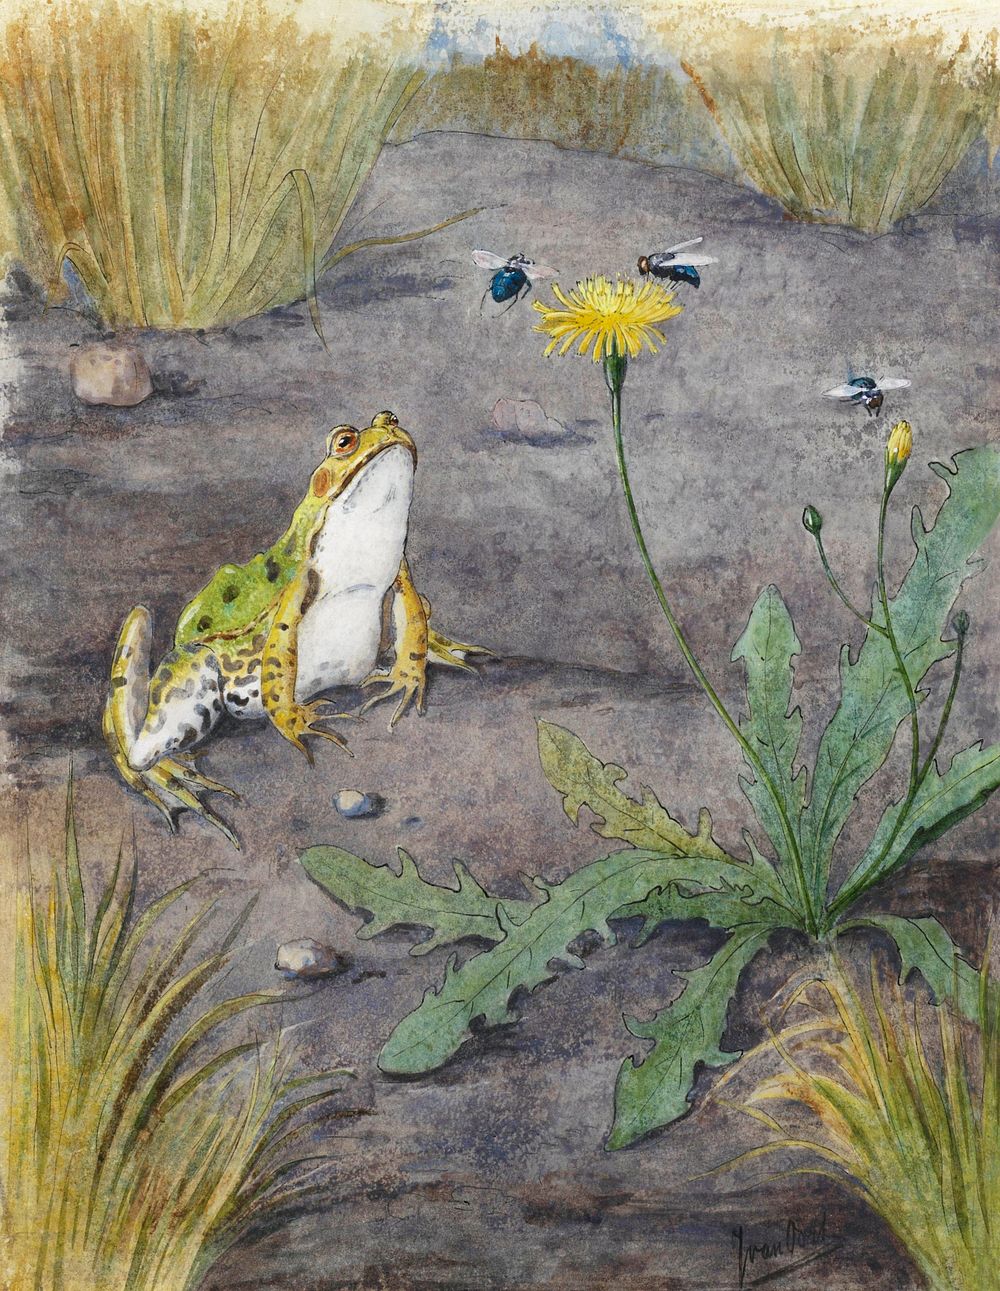 Frog by a Dandelion with Flies (1877&ndash;1938) by Jan van Oort. Original from The Rijksmuseum. Digitally enhanced by…